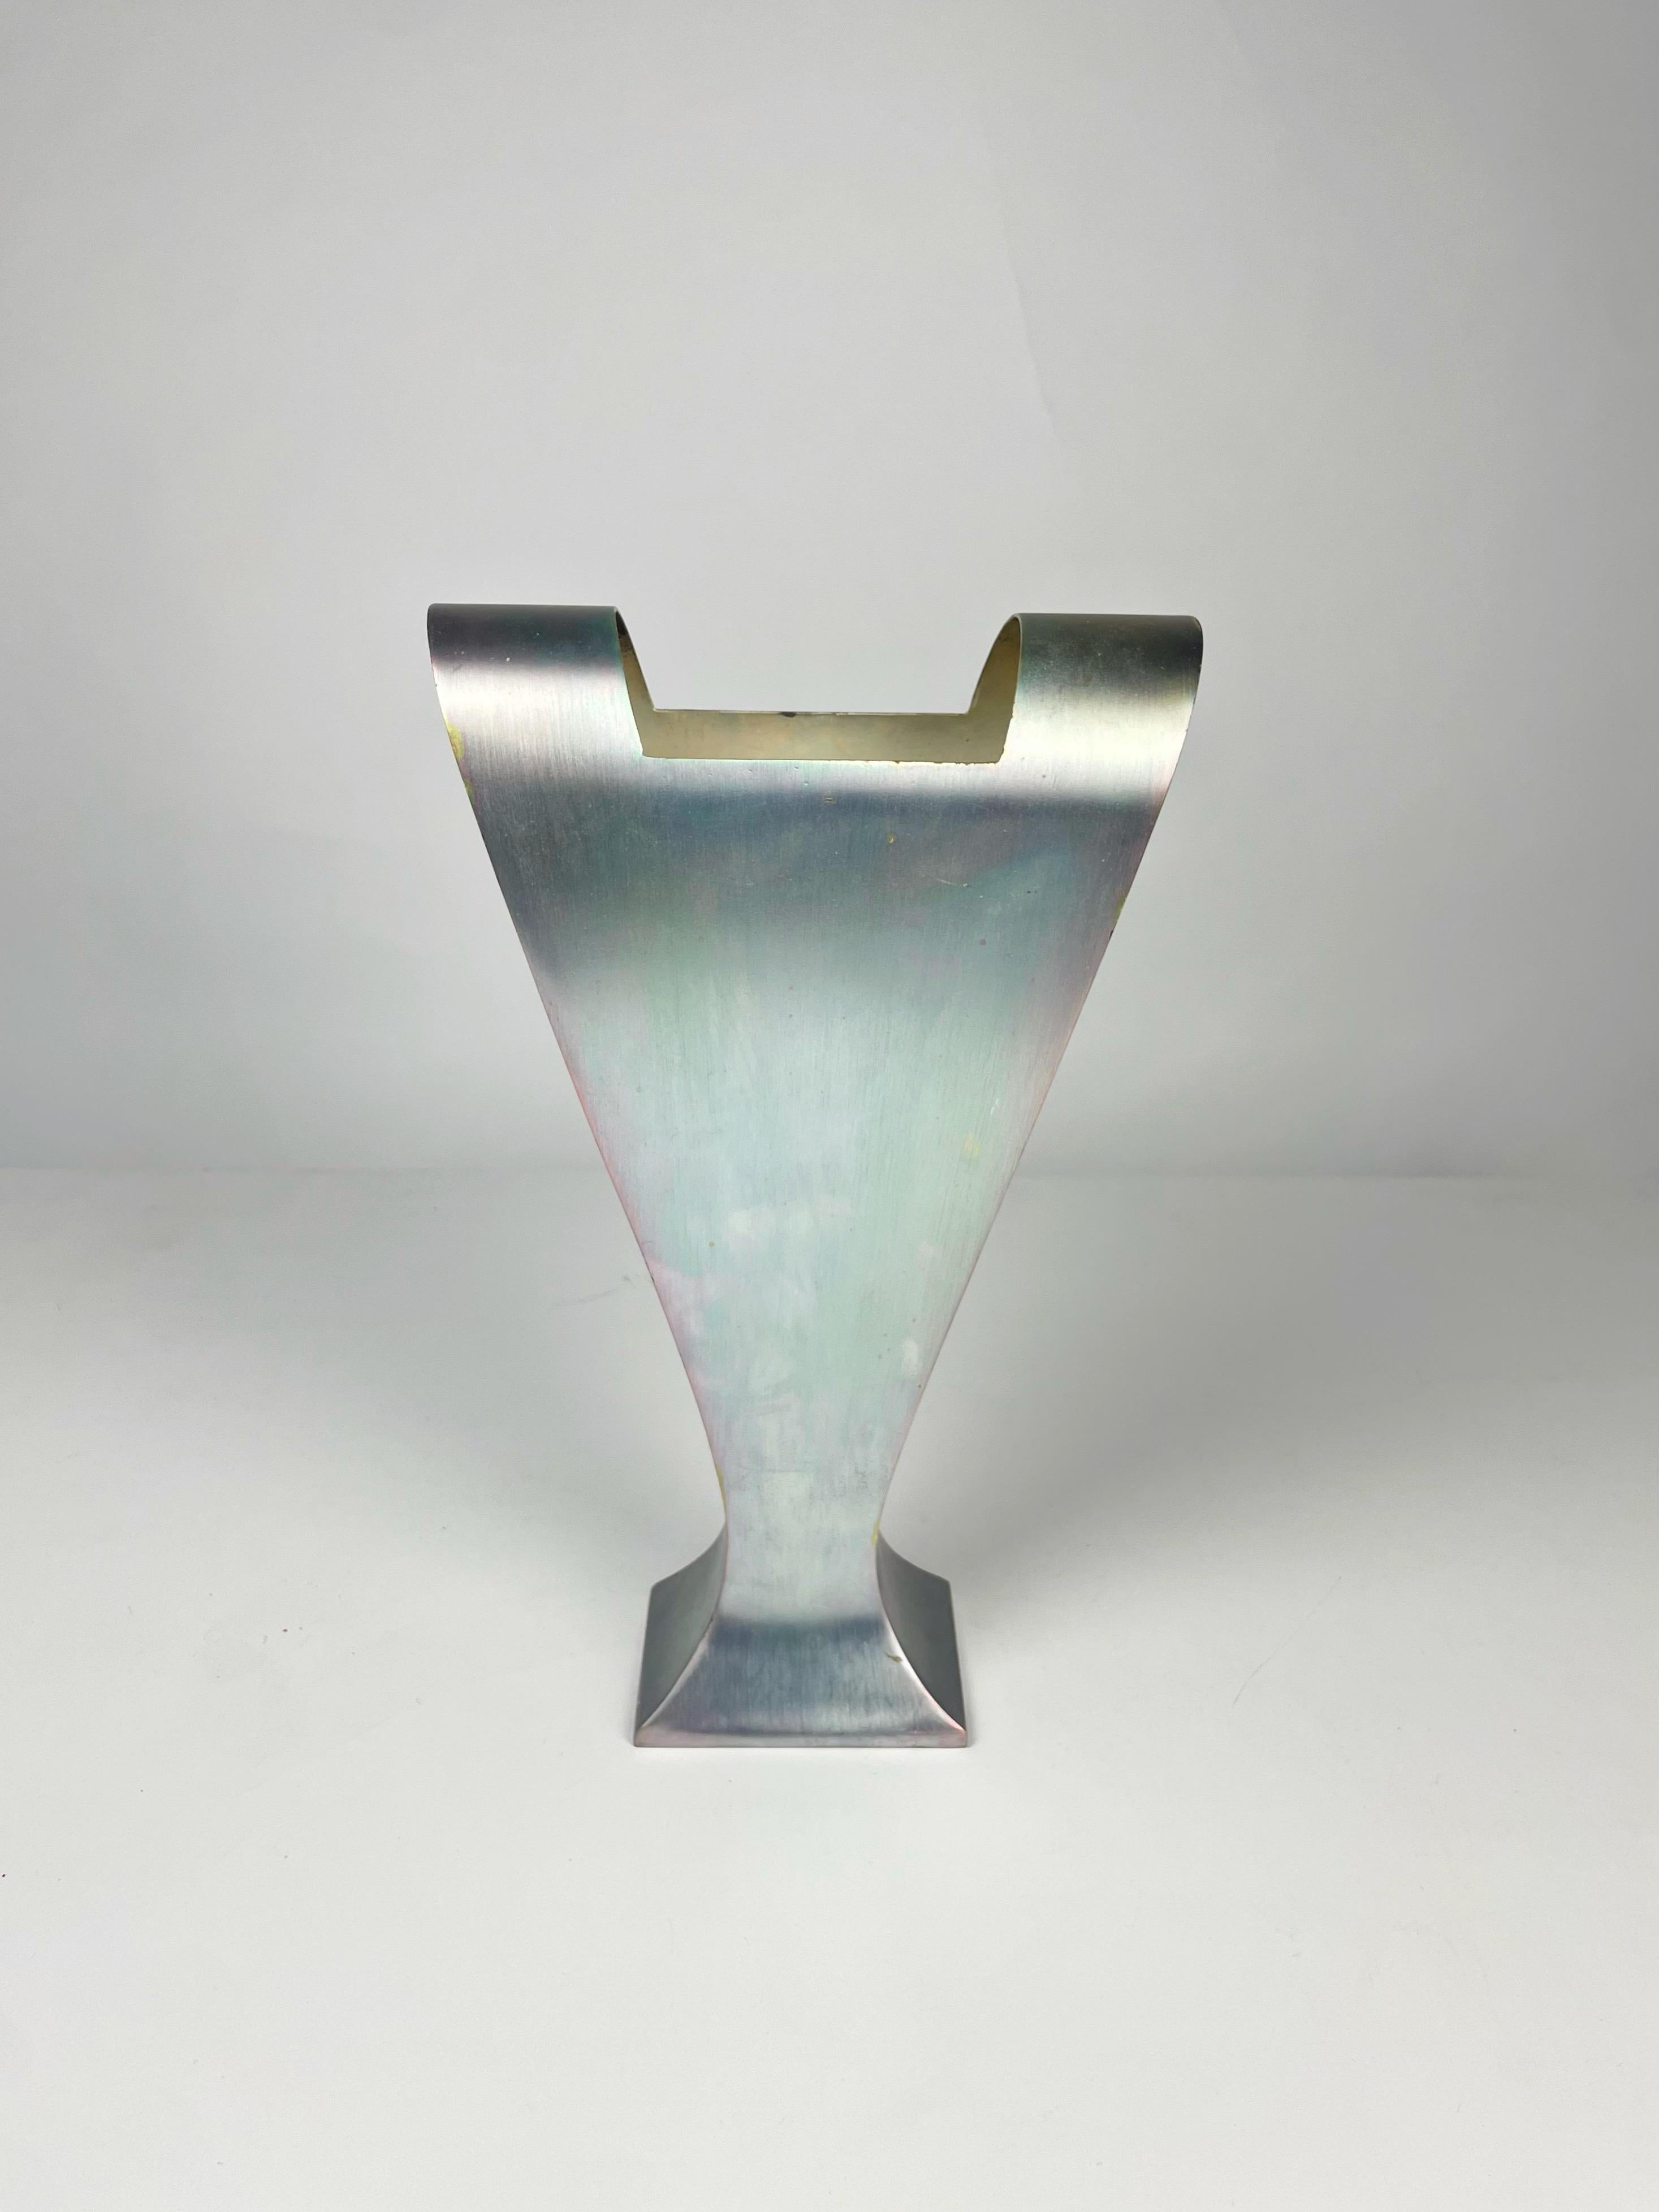 Vase entworfen von Massimo Iosa Ghini für die Design/One Gallery Milano um 1989, hergestellt von Argenteria Merano in Italien aus versilbertem Alpaka. Modell vermutlich aus einer Vorserie, später in limitierter Kleinserie für die Design Galerie